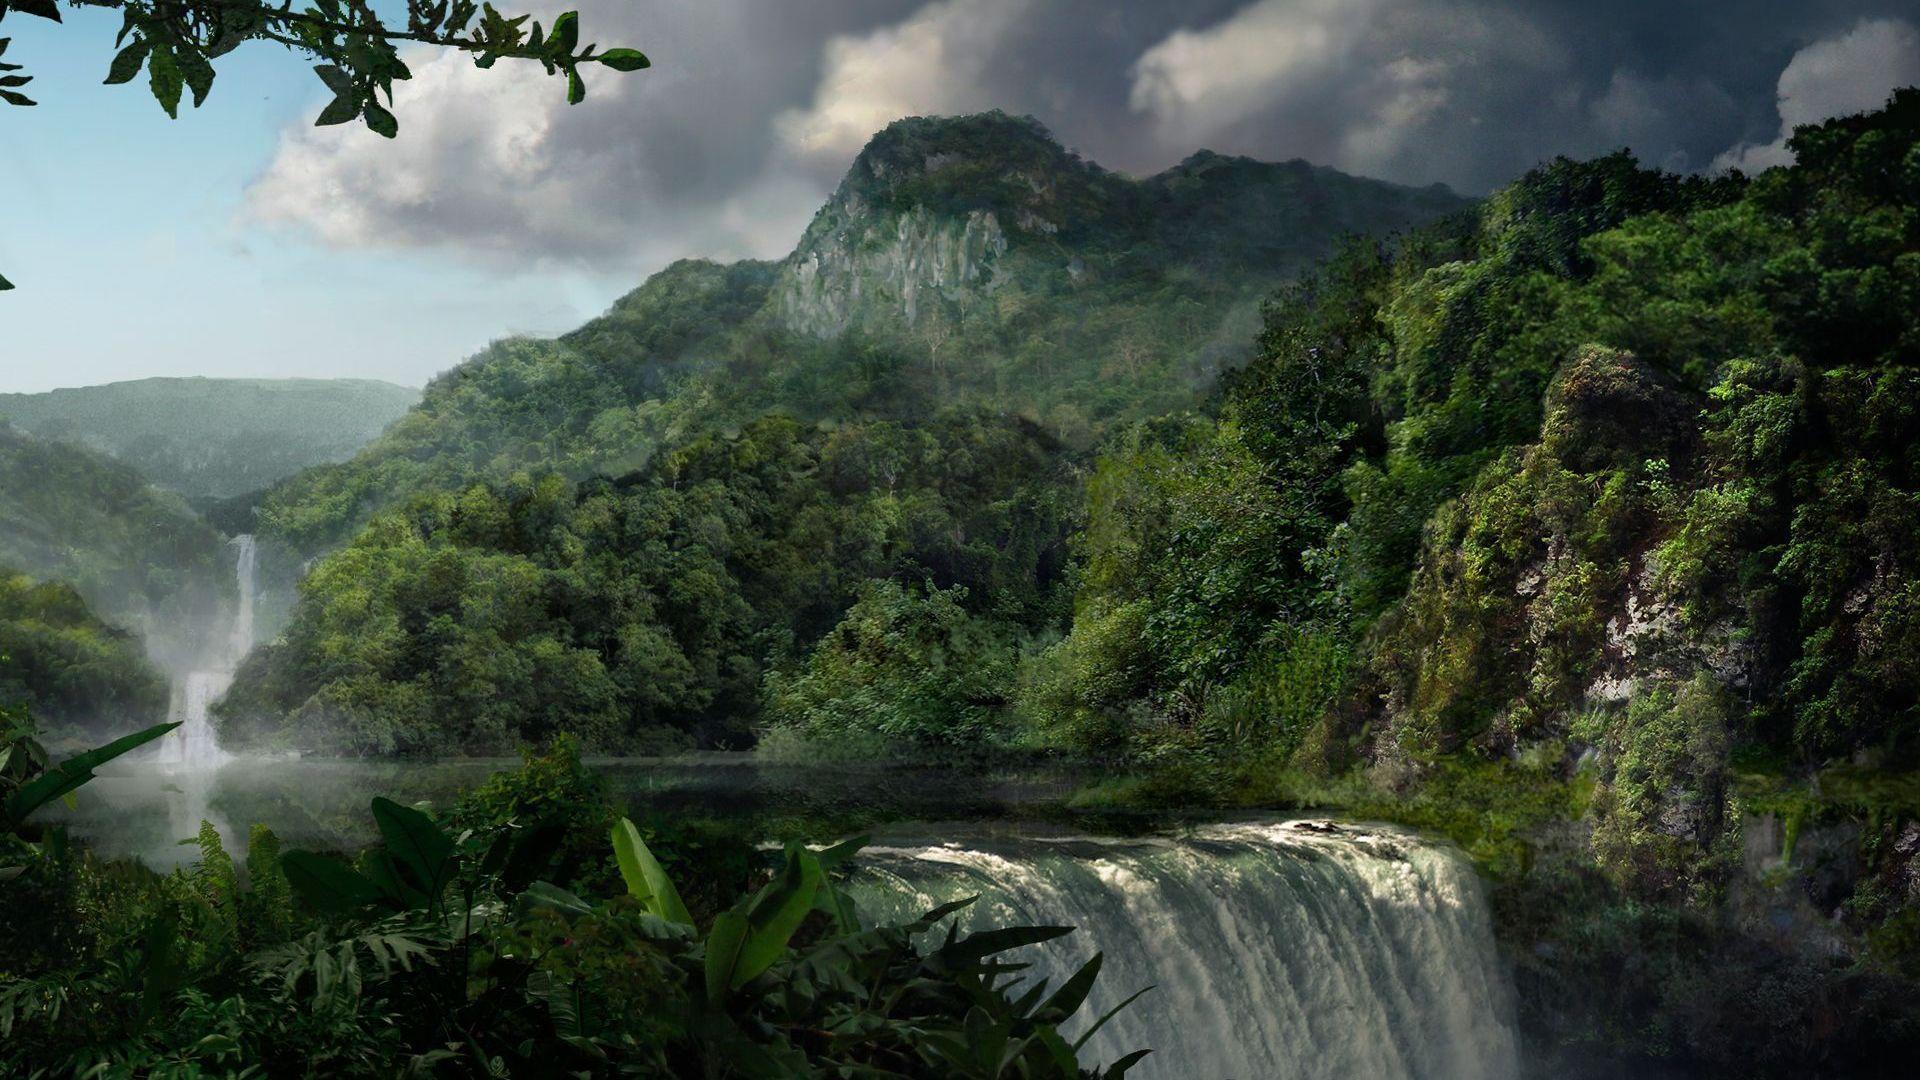 عکس پروفایل دلپسند طبیعت بکر با نقشی از رودخانه و جنگل